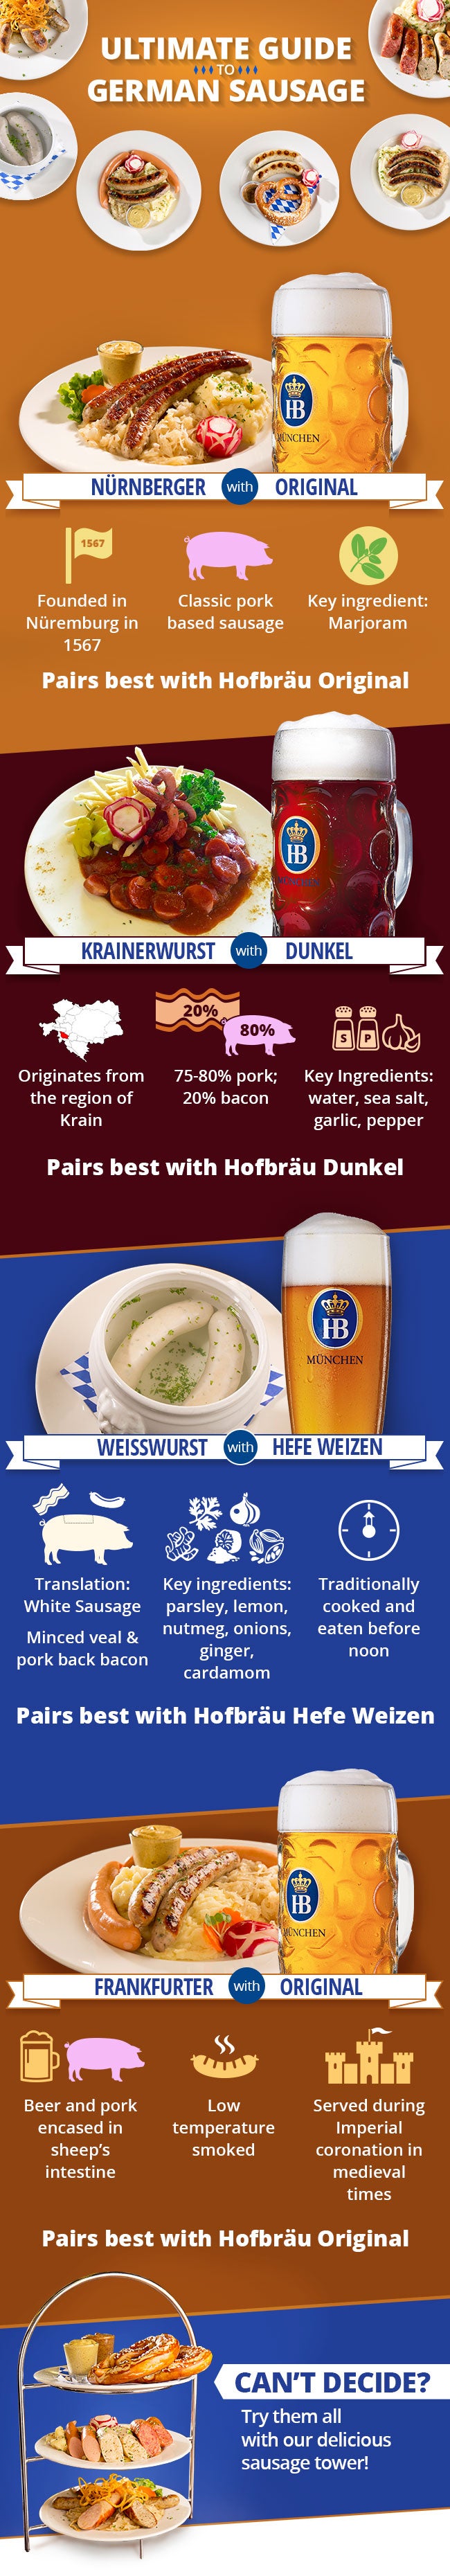 Your Ultimate Guide To German Sausage | Hofbrauhaus Las Vegas